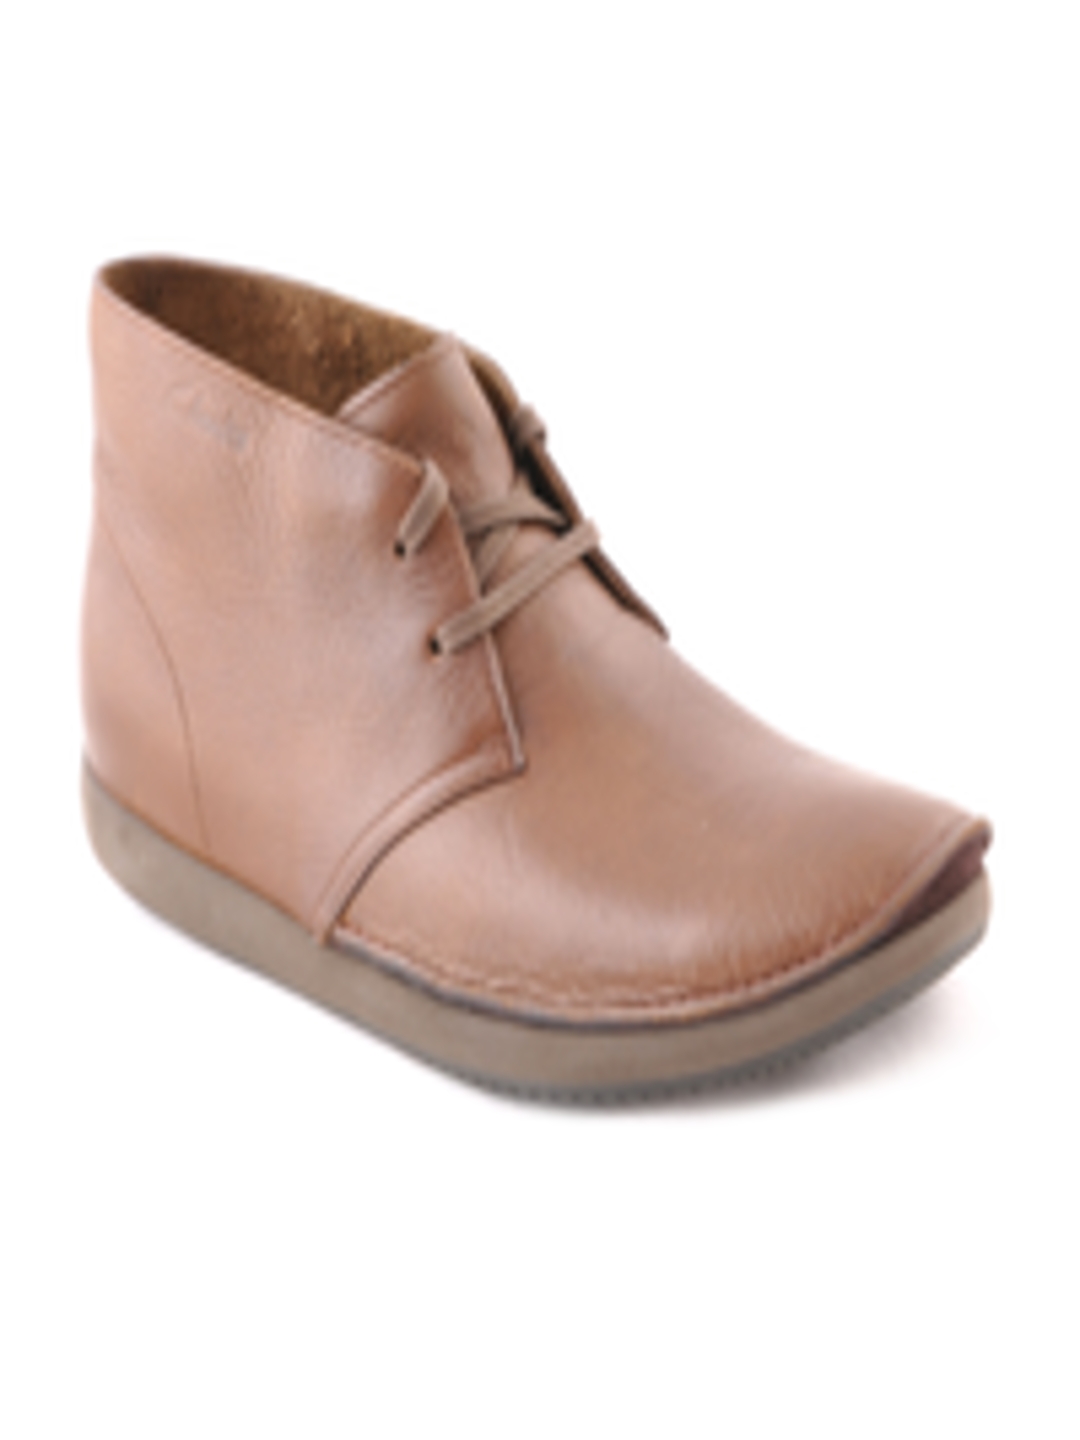 Buy Clarks Men Leather Brown Formal Shoes - Formal Shoes for Men 12483 ...